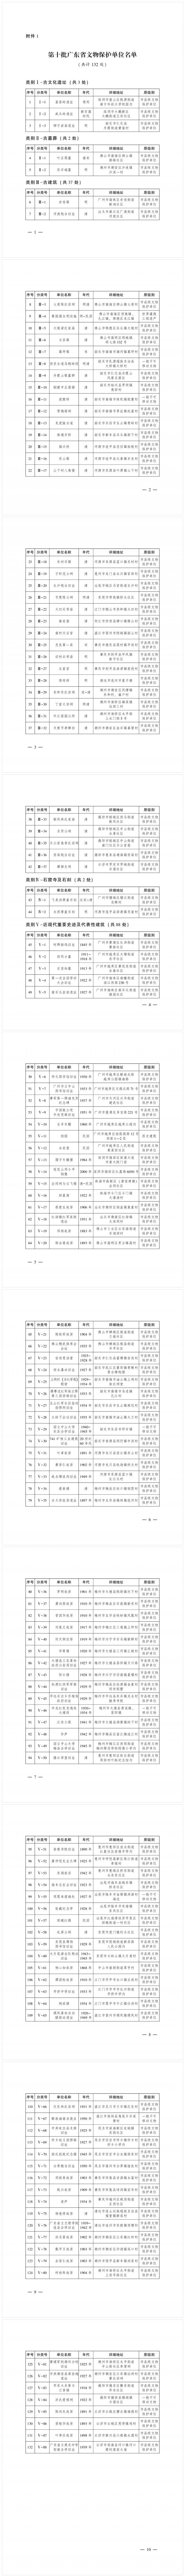 第十批广东省文物保护单位名单公布 新一批省级文物保护单位共计132处 